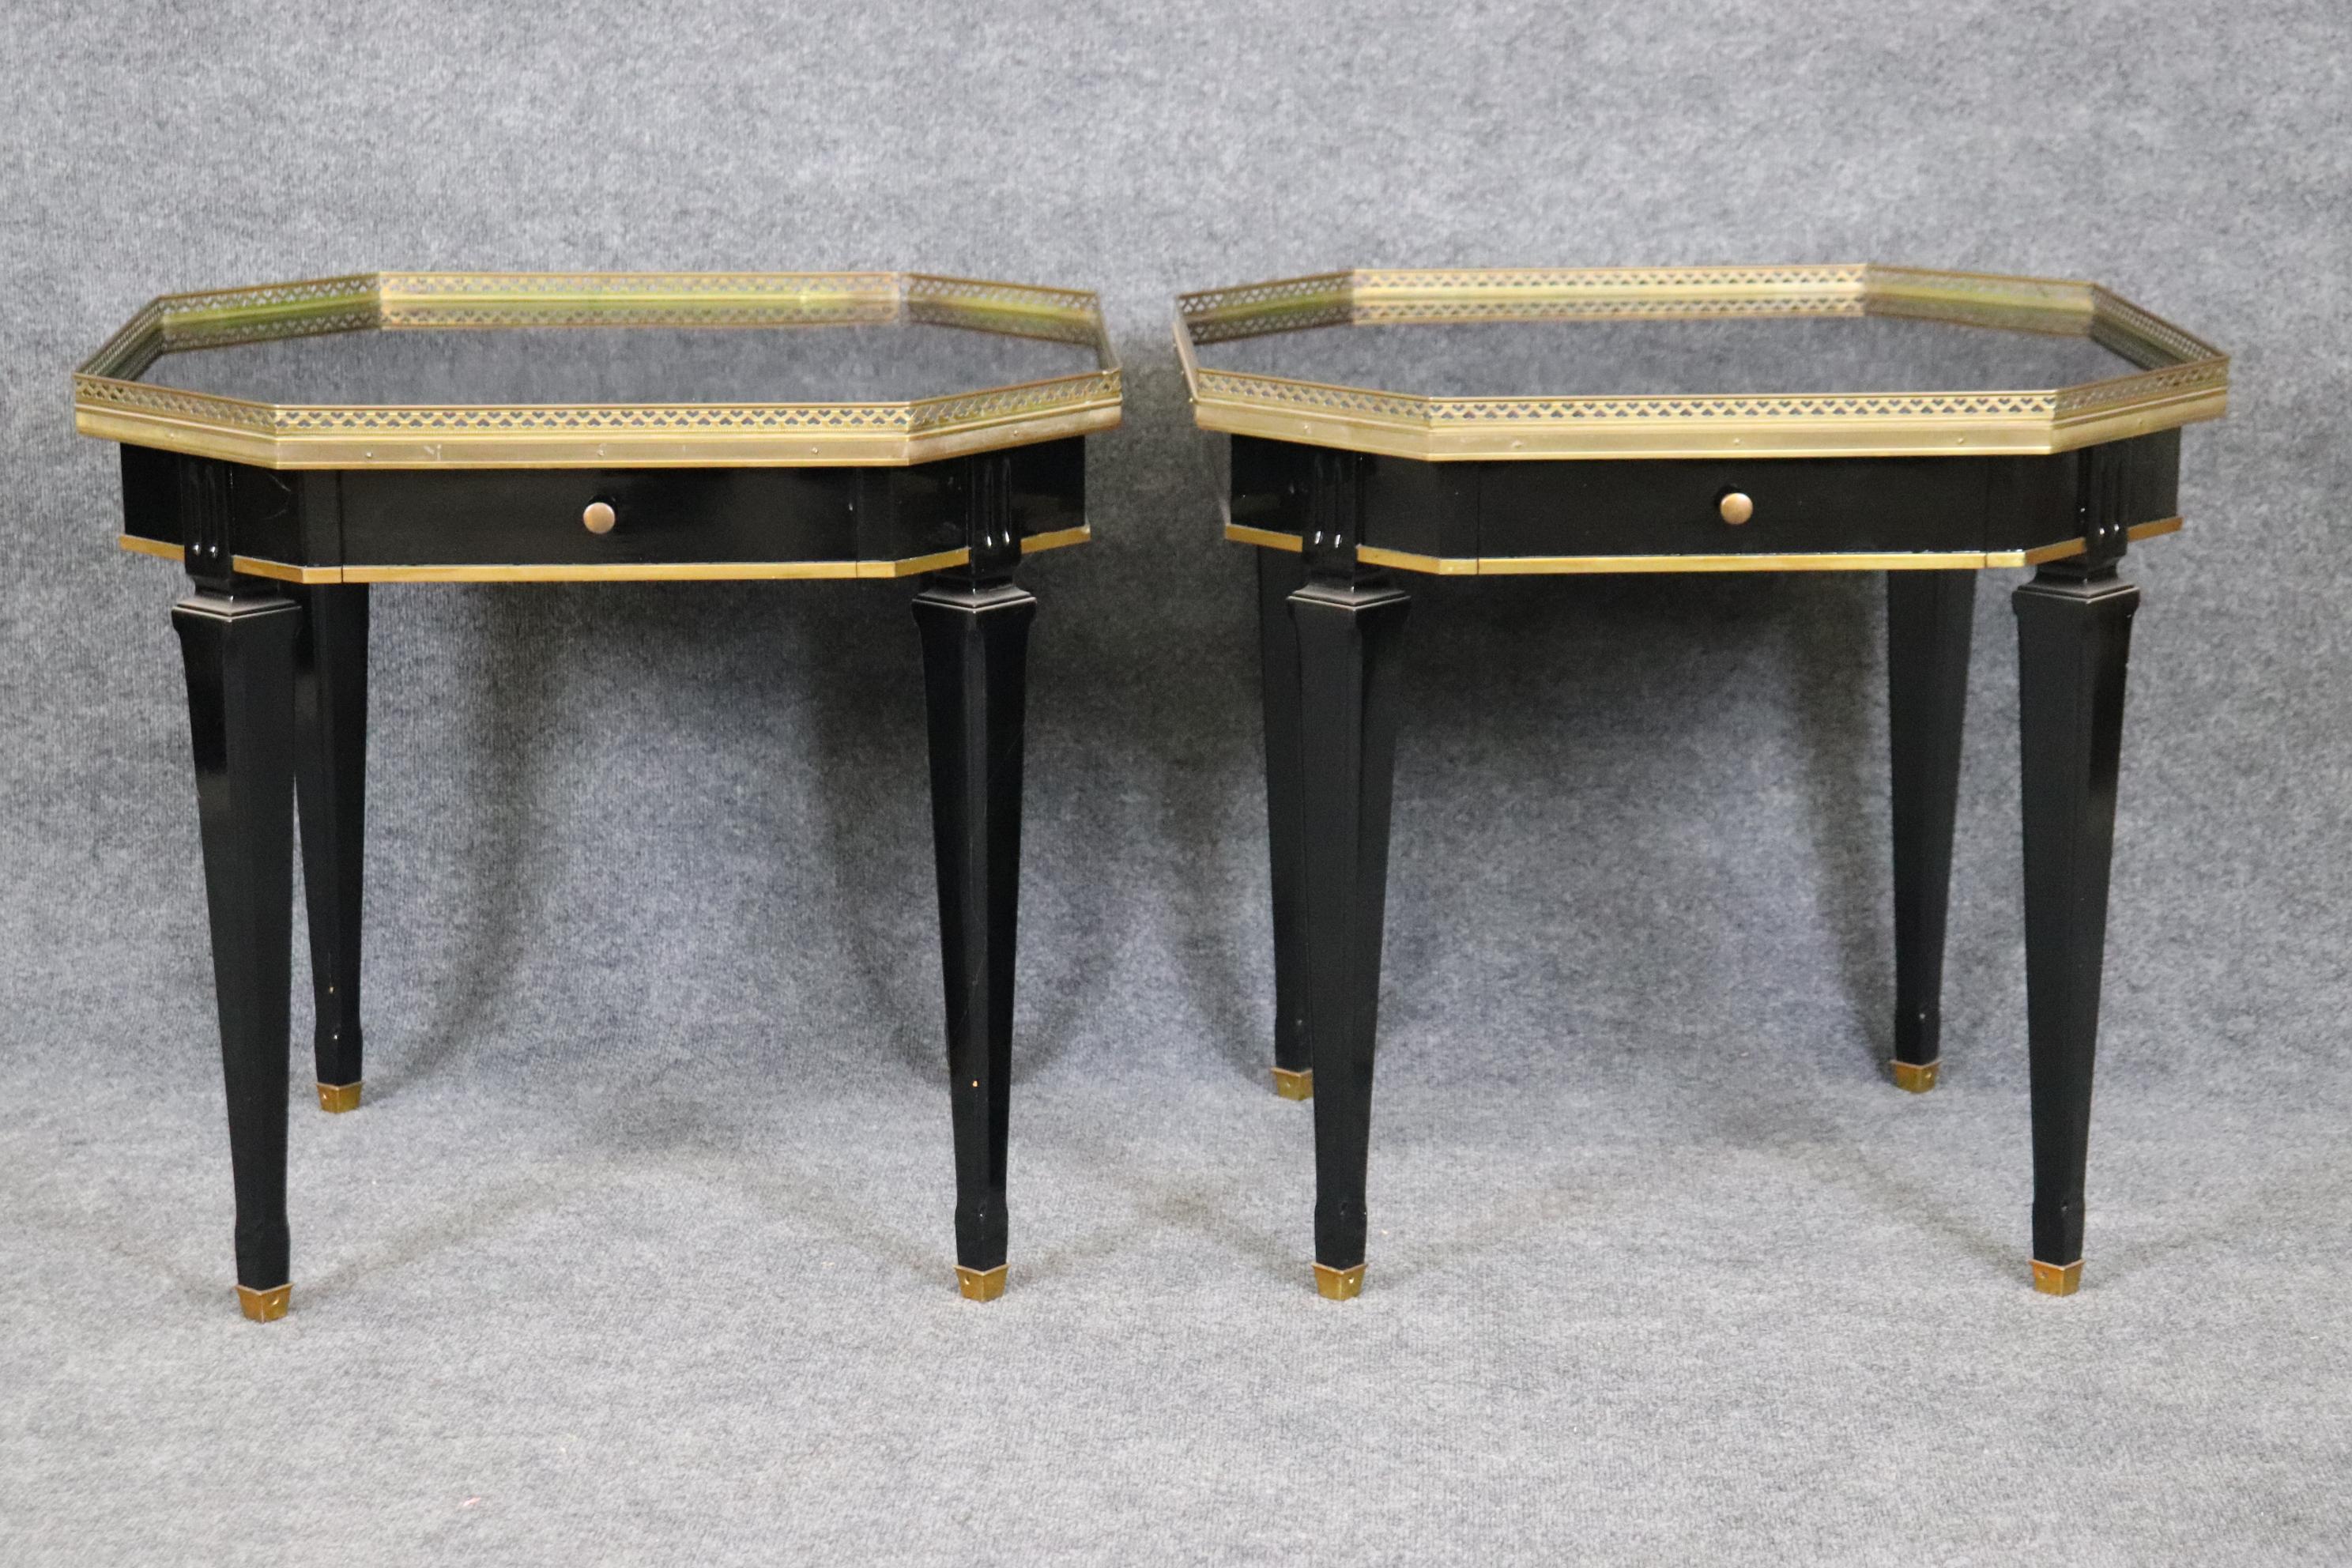 Es handelt sich um prächtige, kürzlich schwarz lackierte Tische im Stil von Maison Jansen im Directoire-Stil. Die Tische sind in gutem Zustand und haben minimale Alters- und Gebrauchsspuren. Die Qualität der Tische ist beeindruckend, ebenso wie der